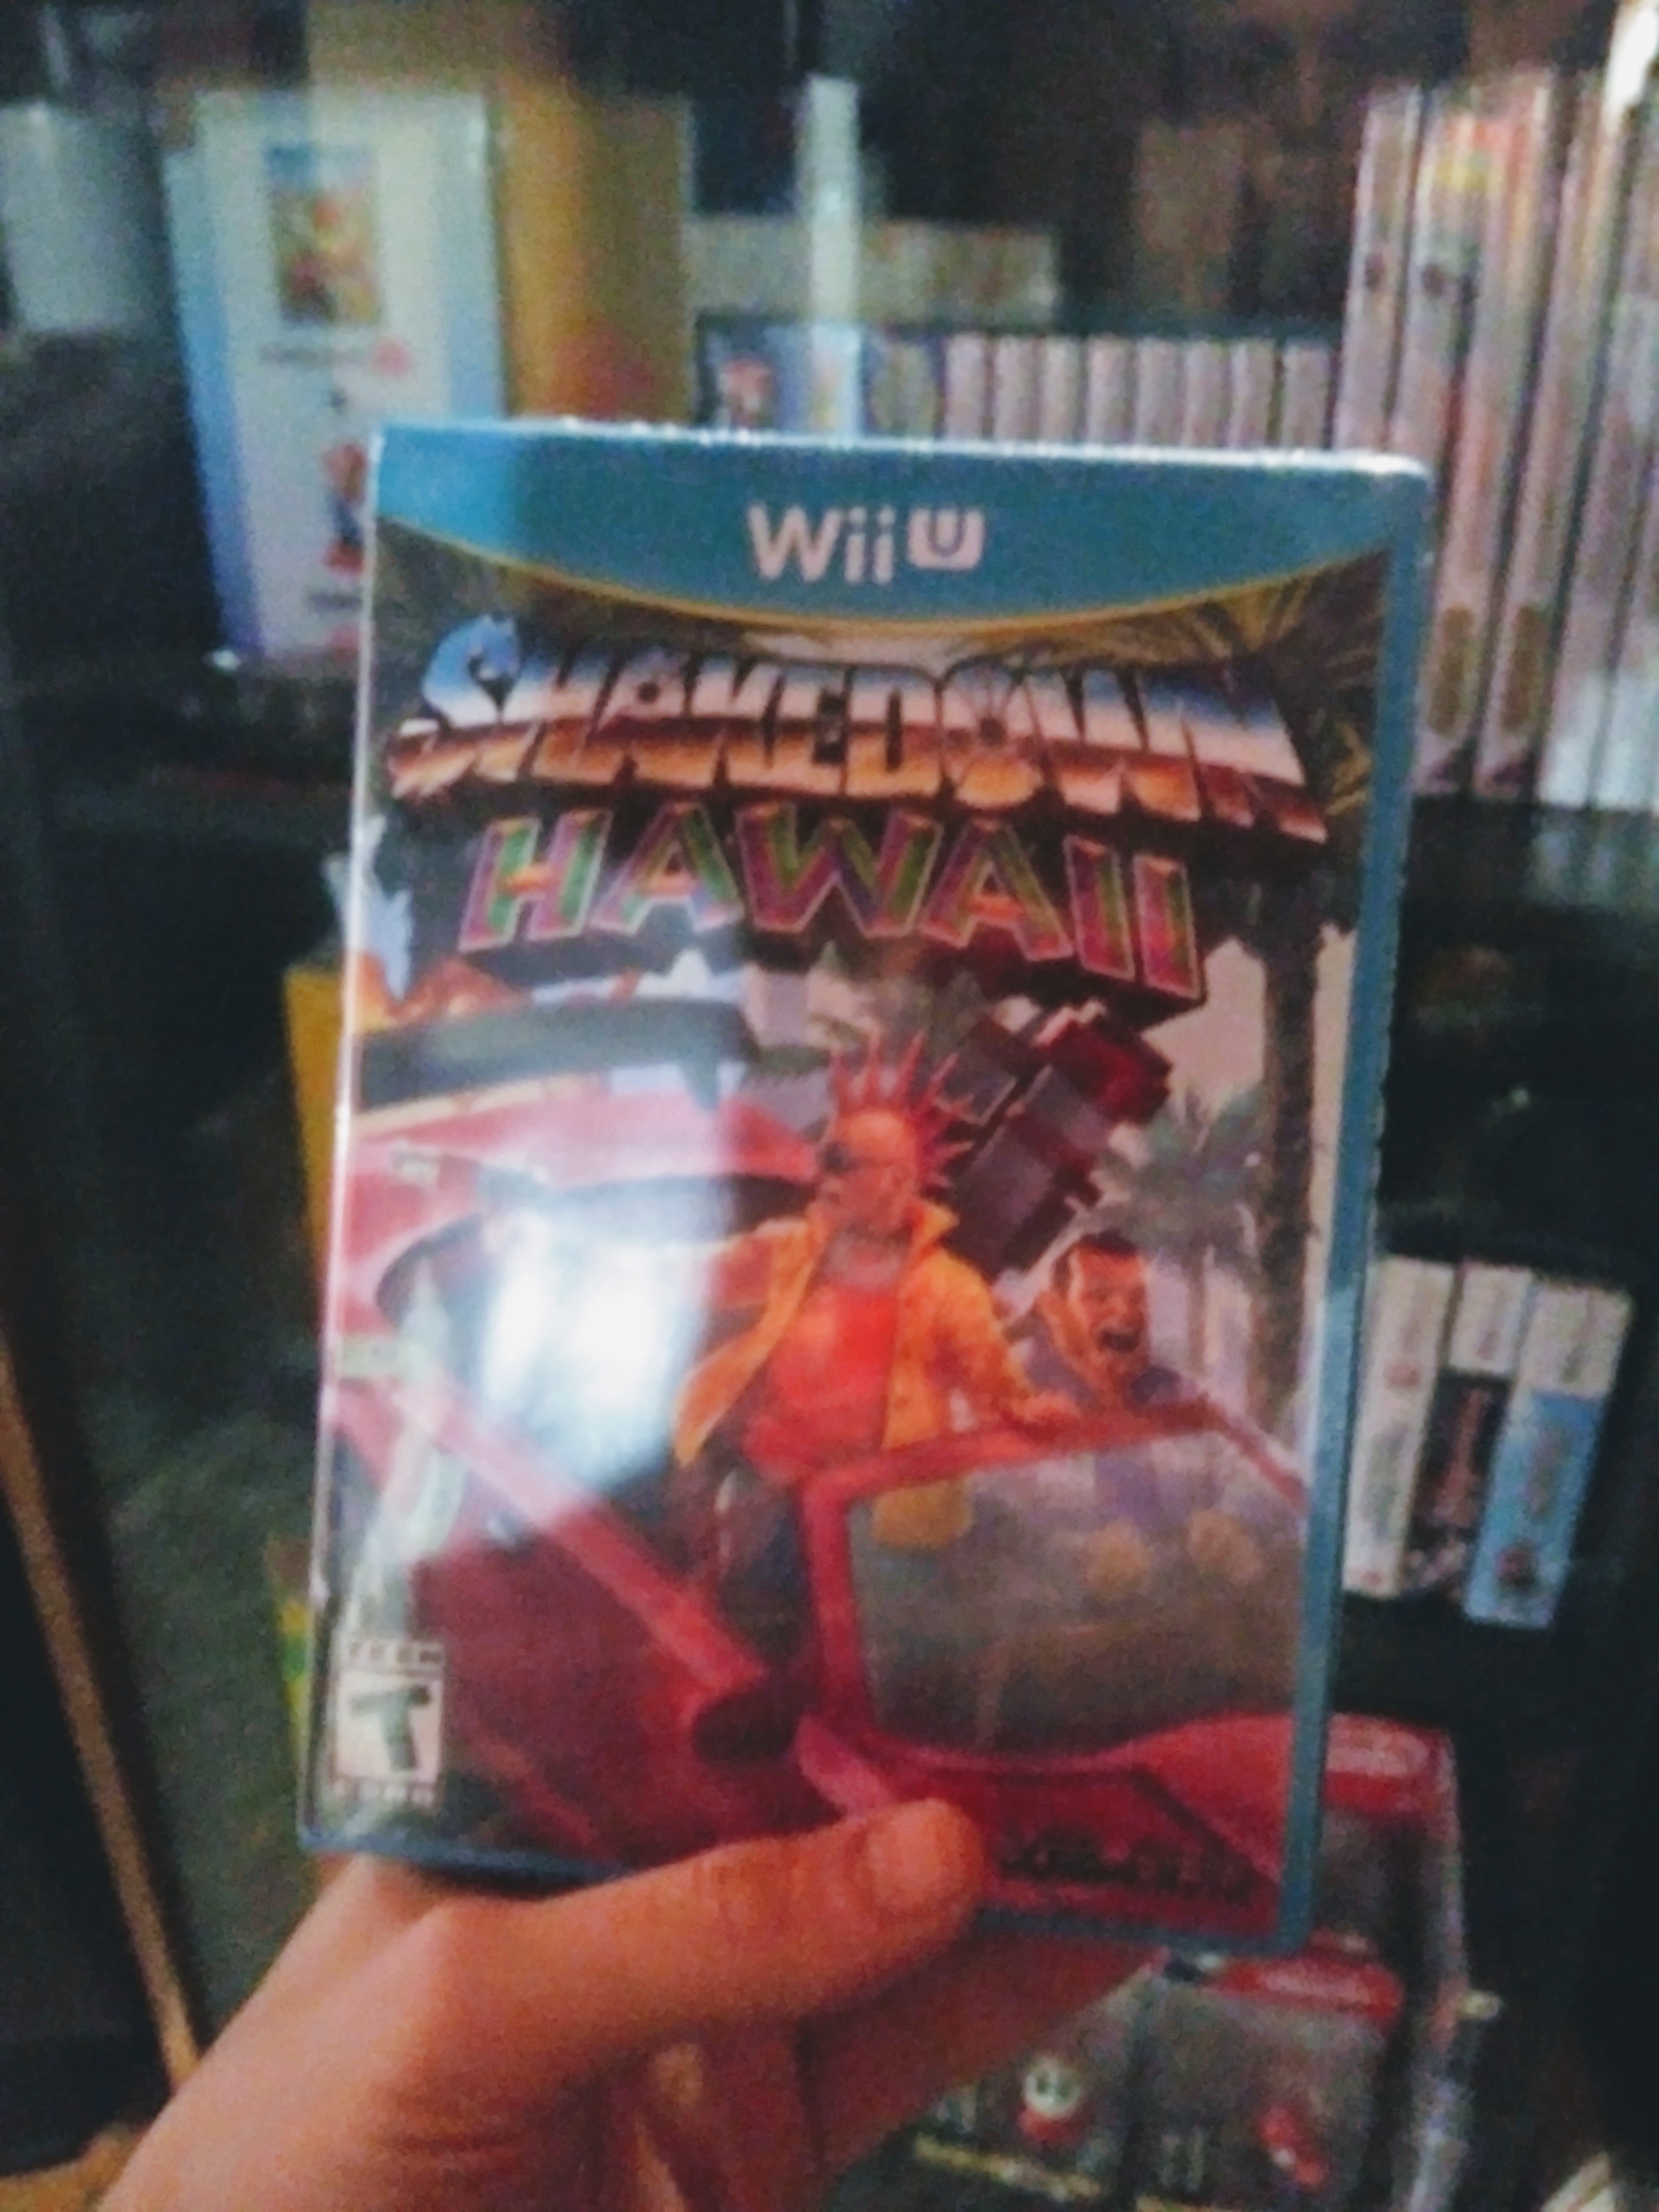 Wii U copy of Shakedown: Hawaii